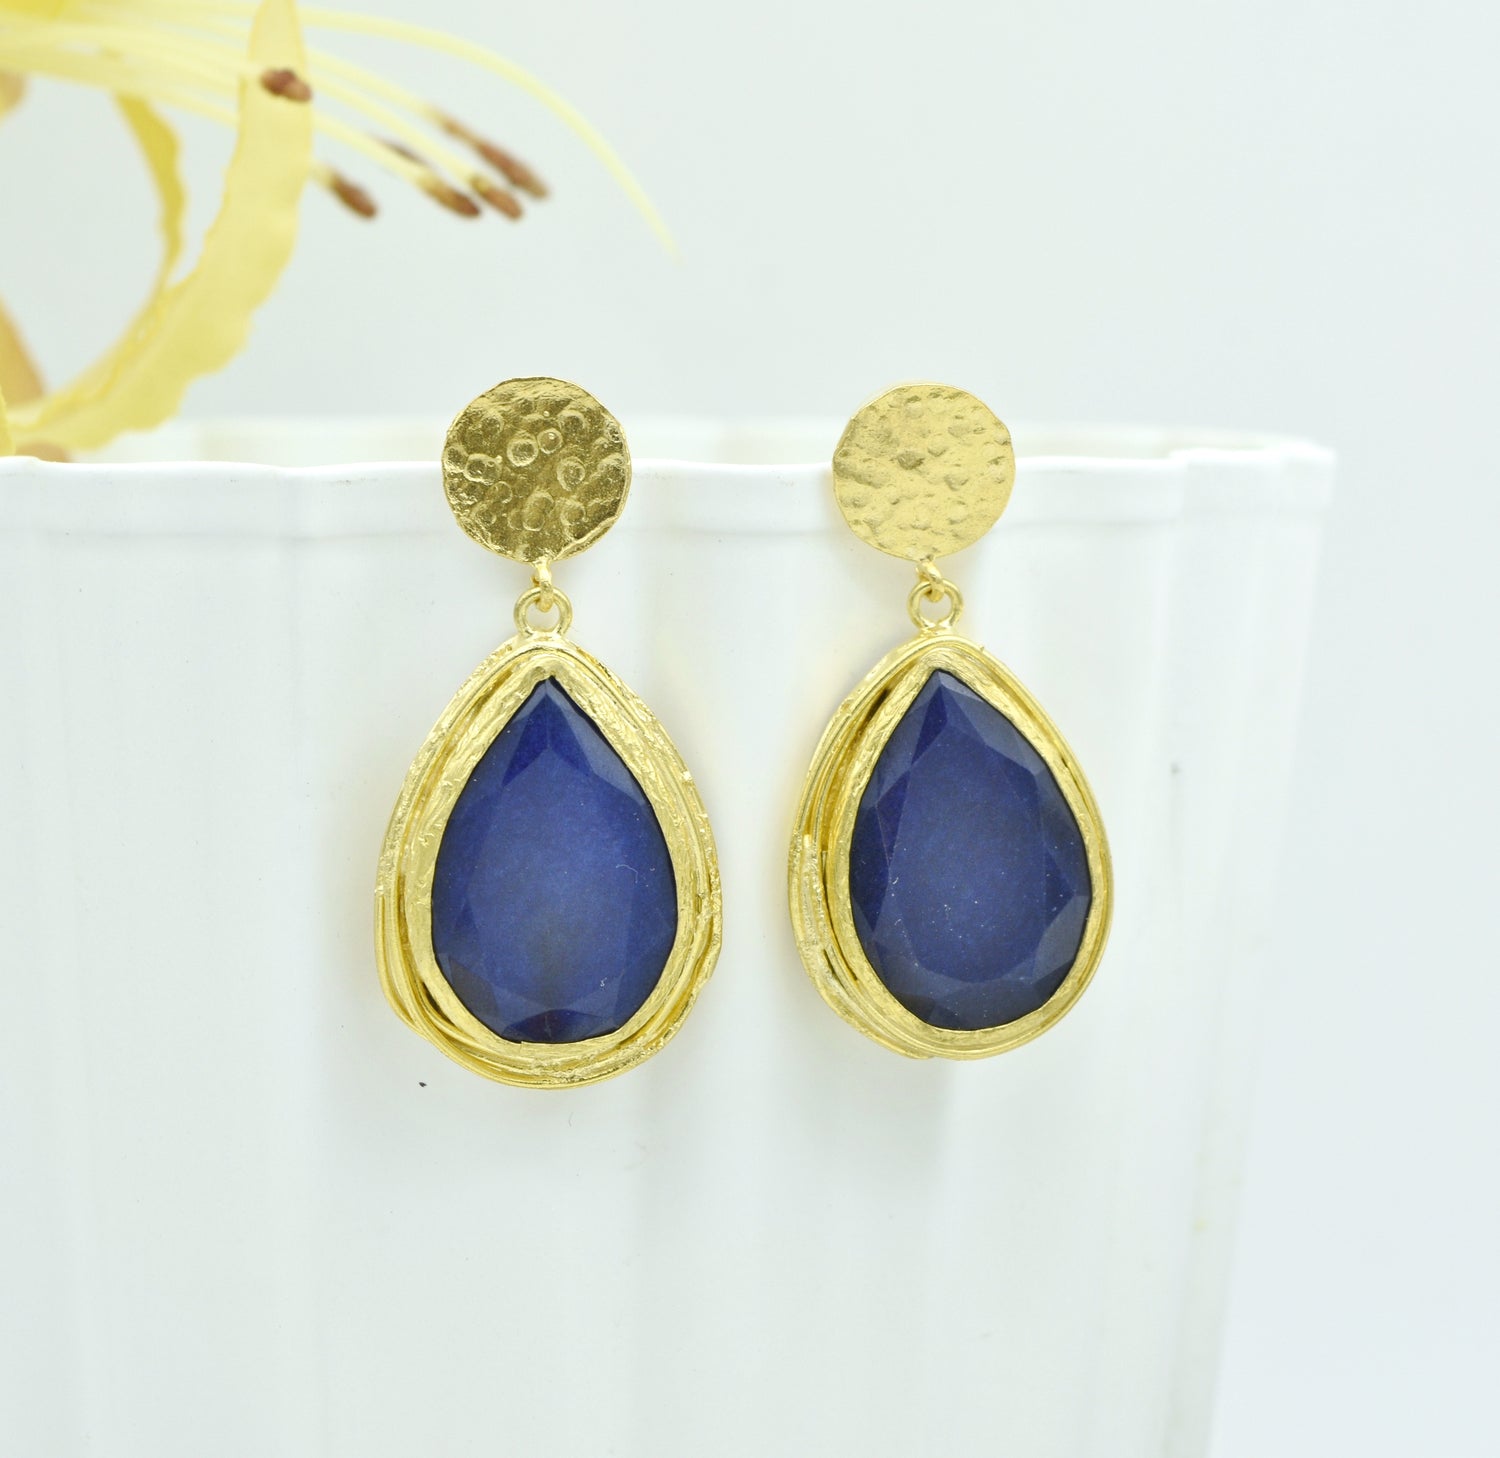 Aylas Jade semi precious gemstone earrings - 21ct Gold plated Handmade